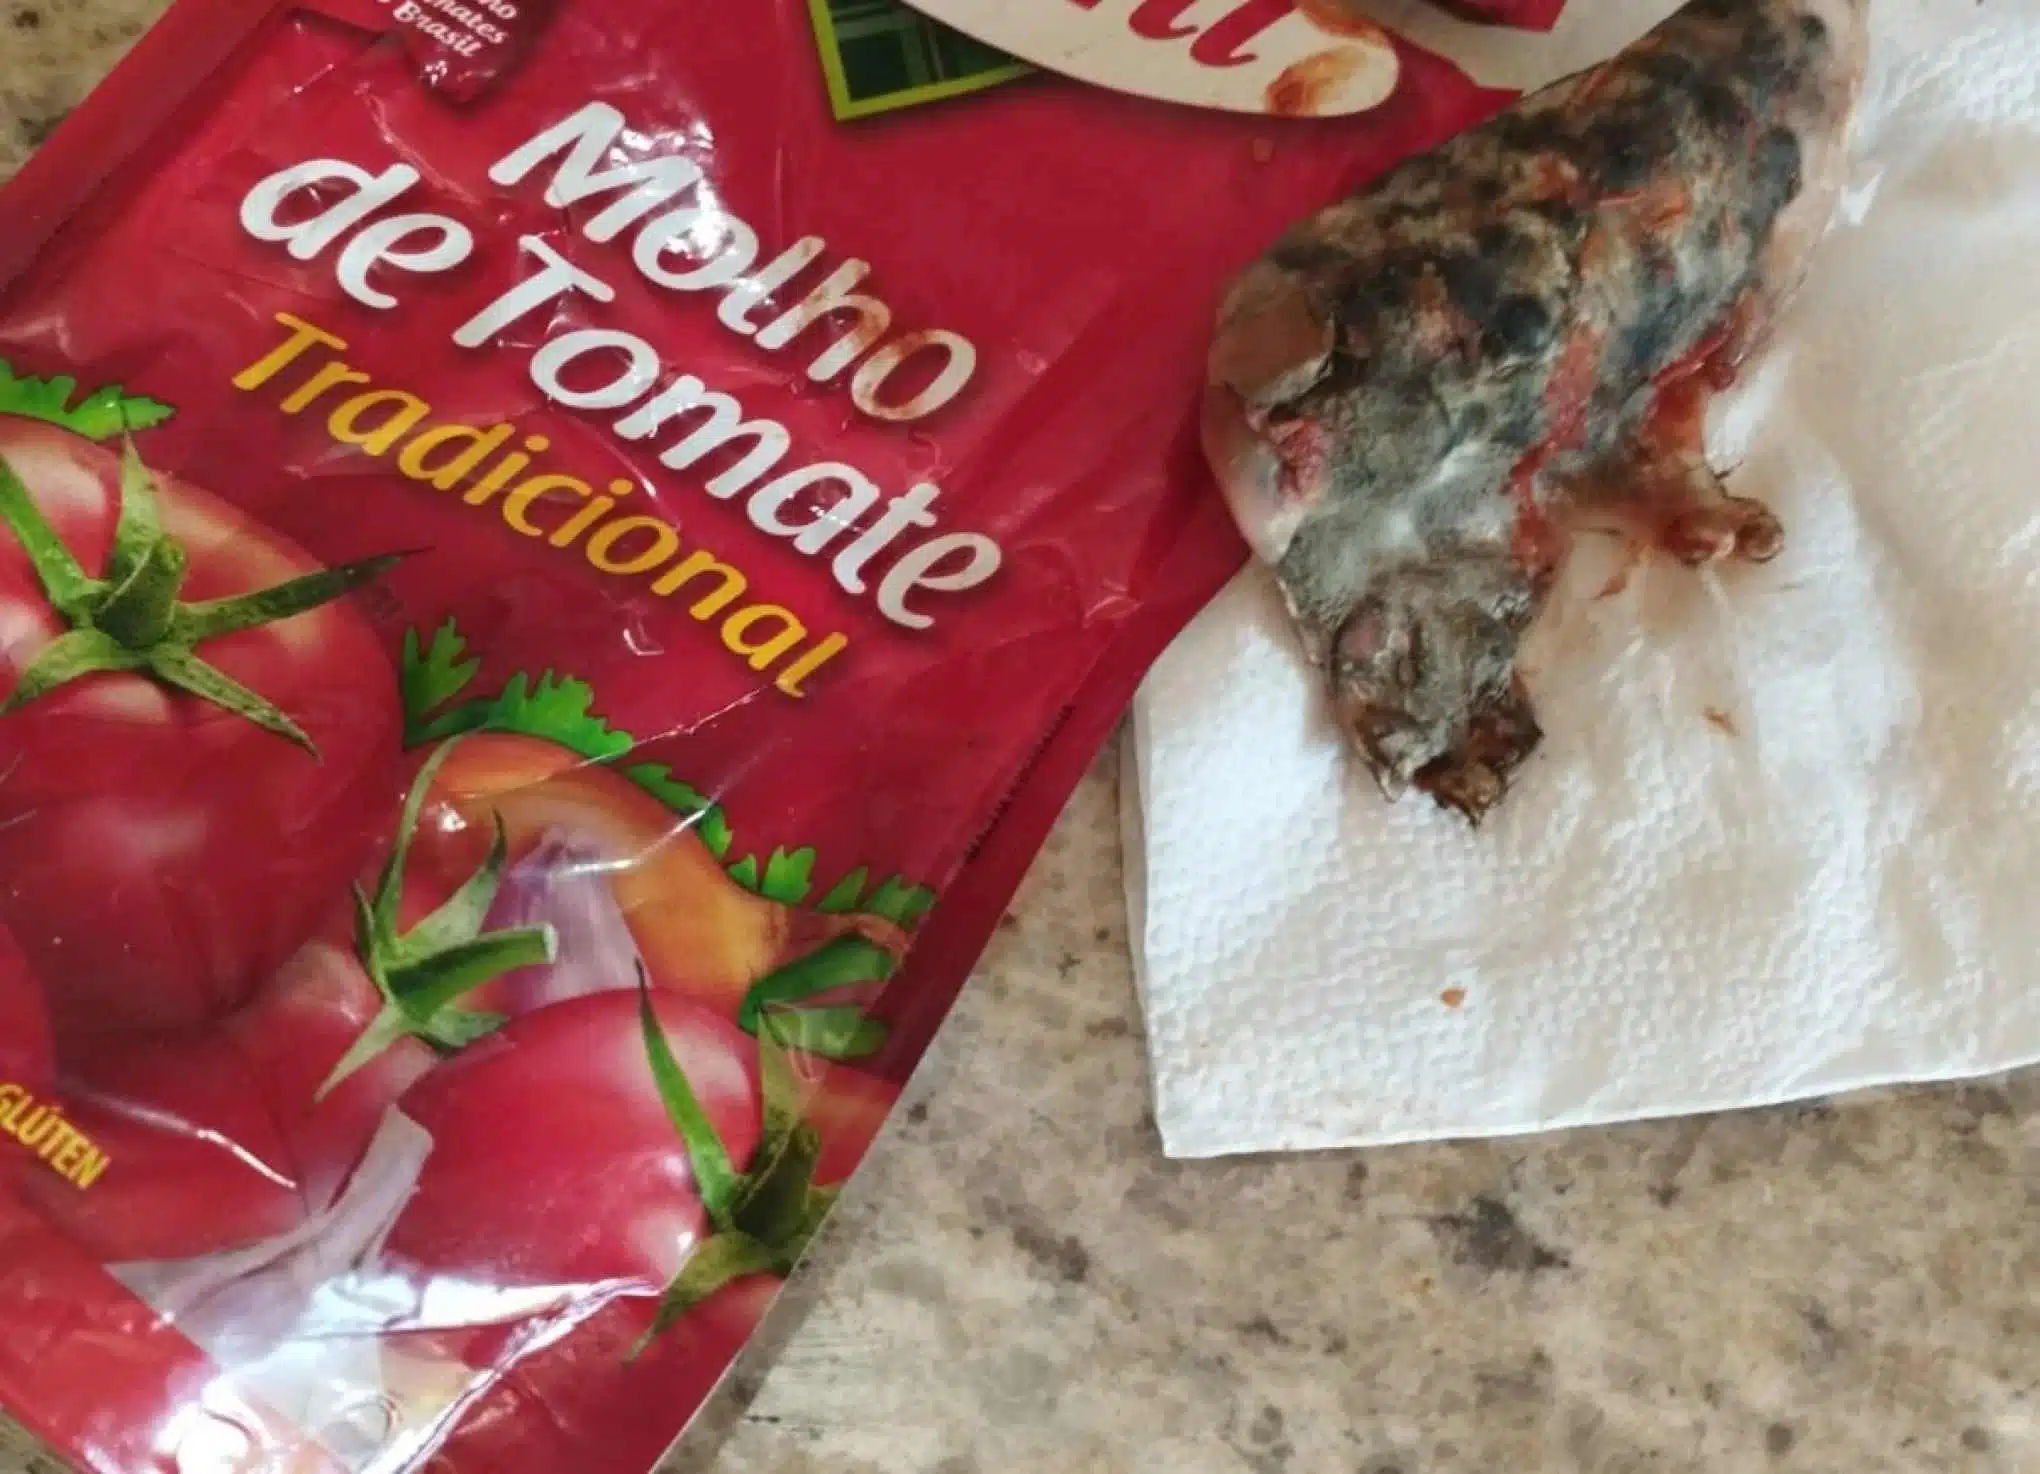 Foto mostra produto contaminado encontrado nos supermercados do RS